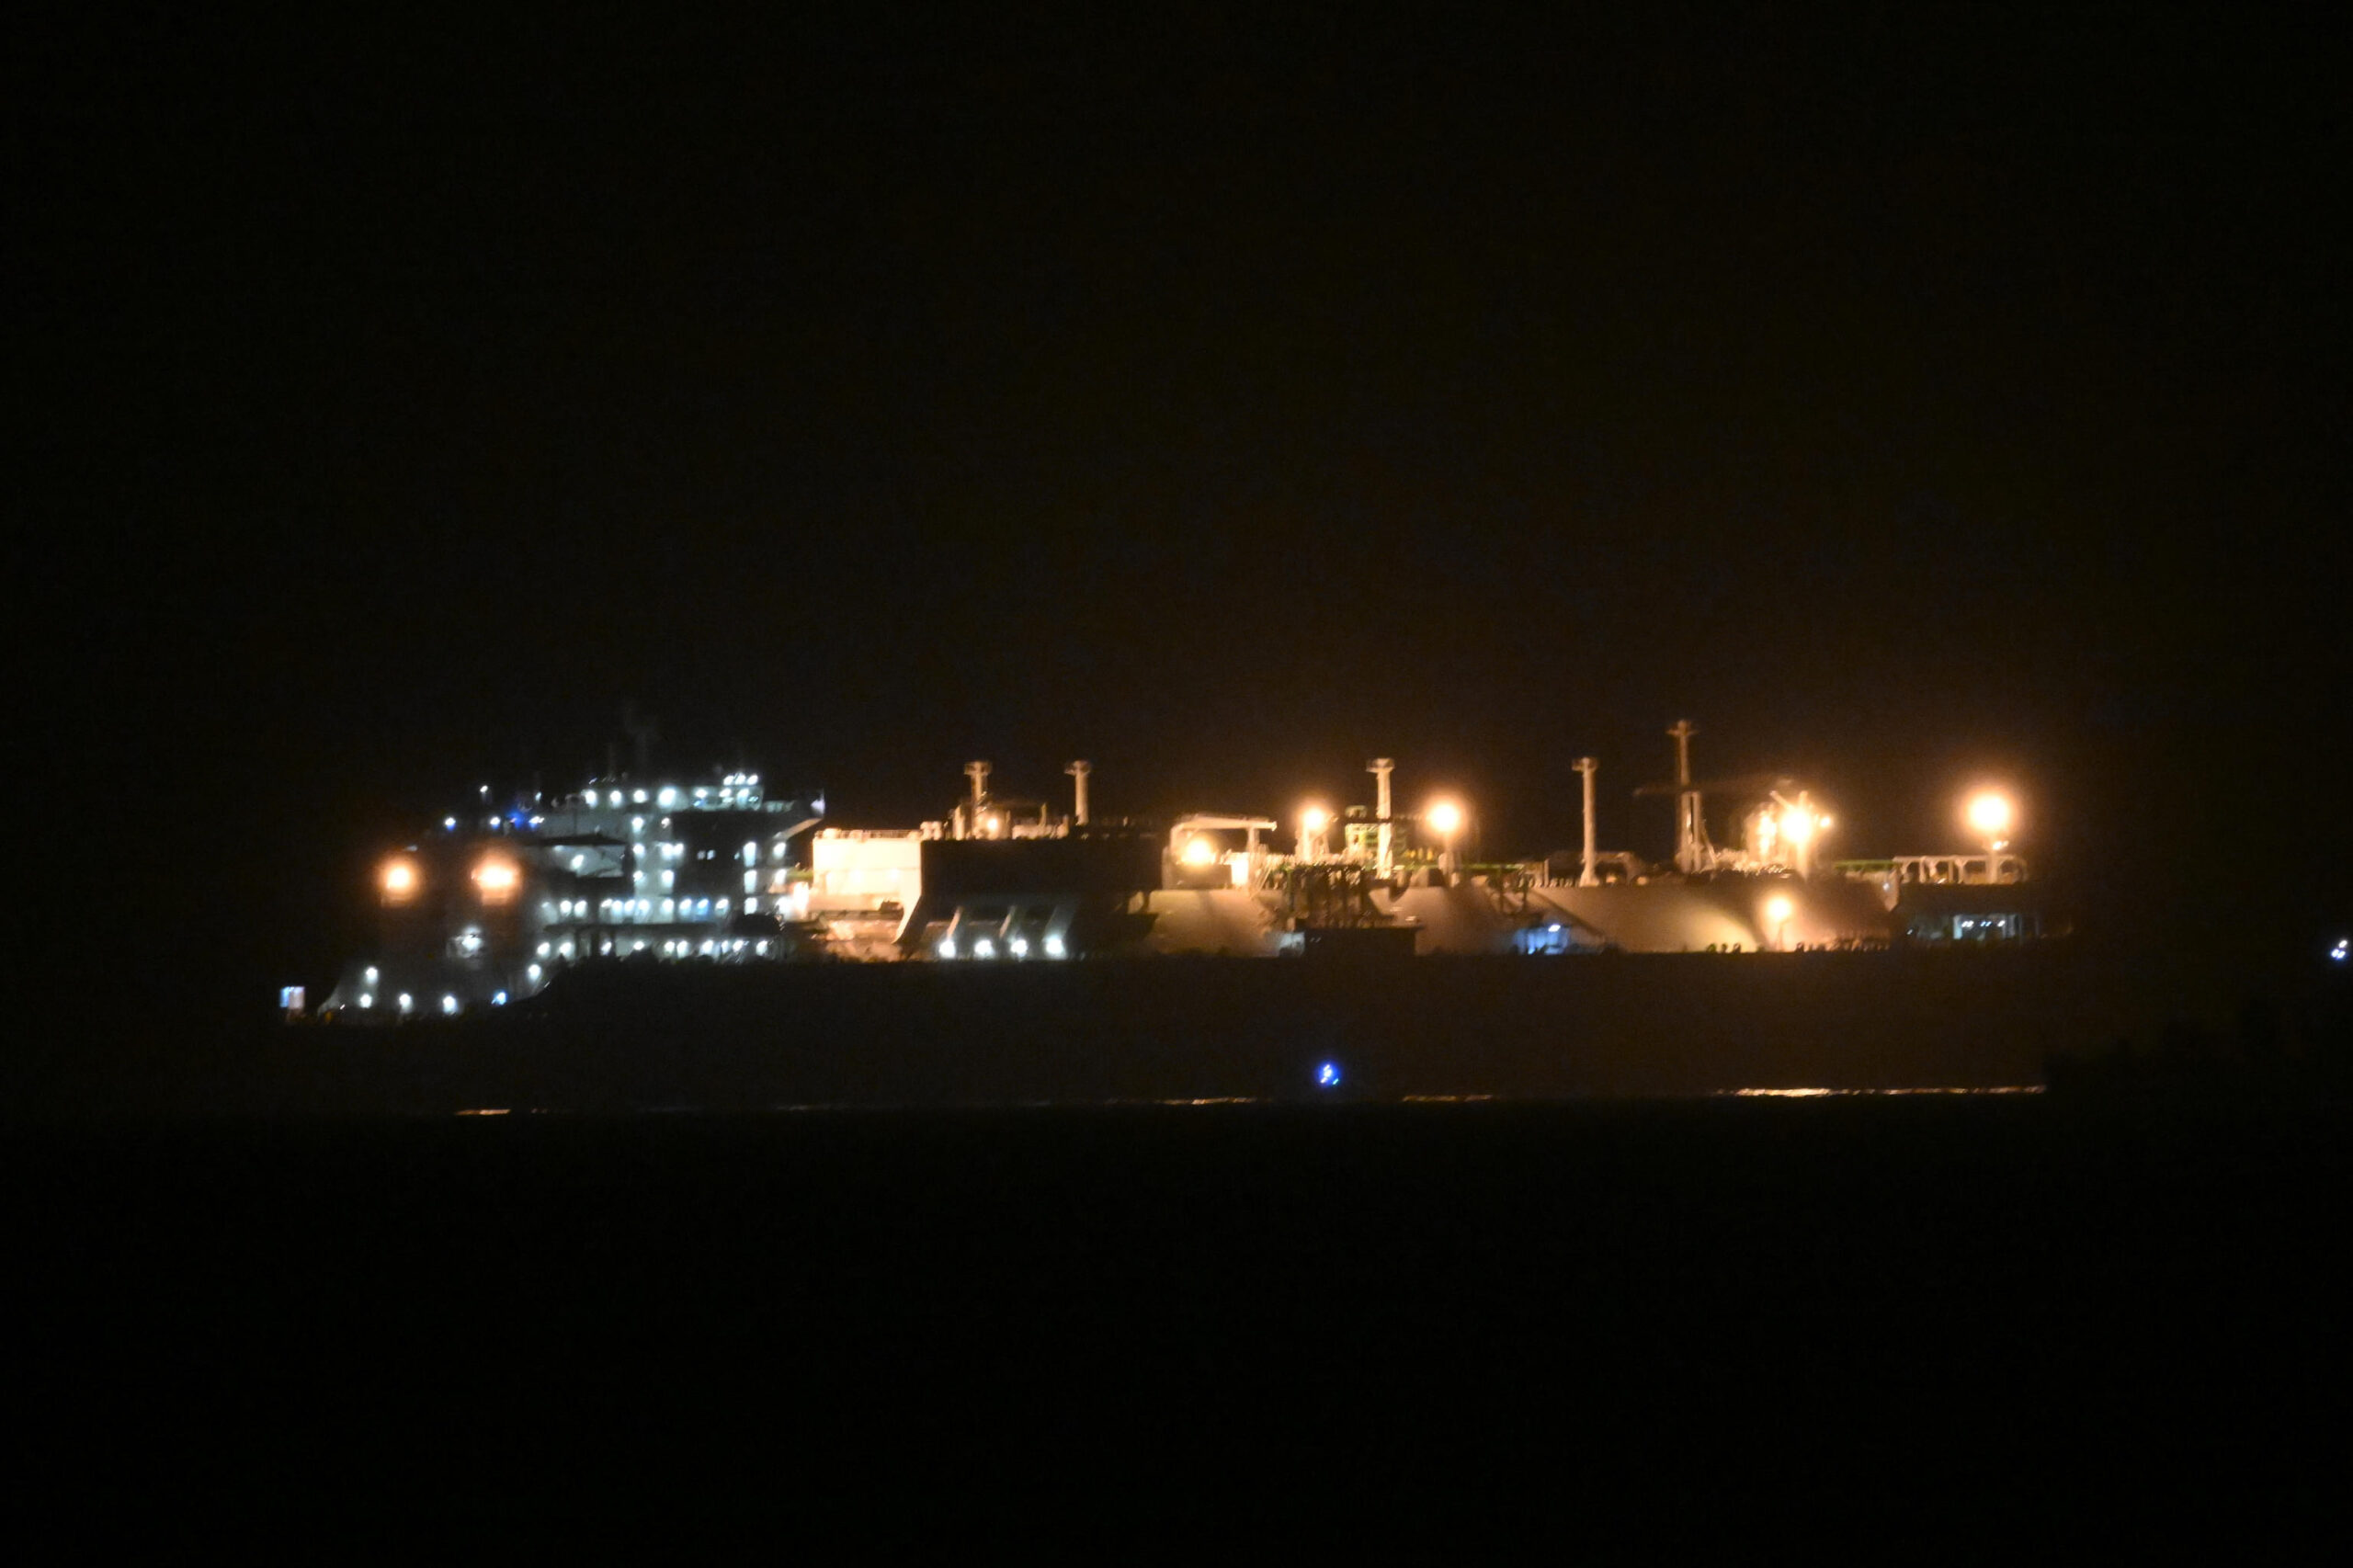 L'arrivo della nave rigassificatore Golar Tundra al porto di Piombino (Livorno), 19 marzo 2023.
ANSA/Uff stampa Regione Toscana + PRESS OFFICE, HANDOUT PHOTO, NO SALES, EDITORIAL USE ONLY + NPK